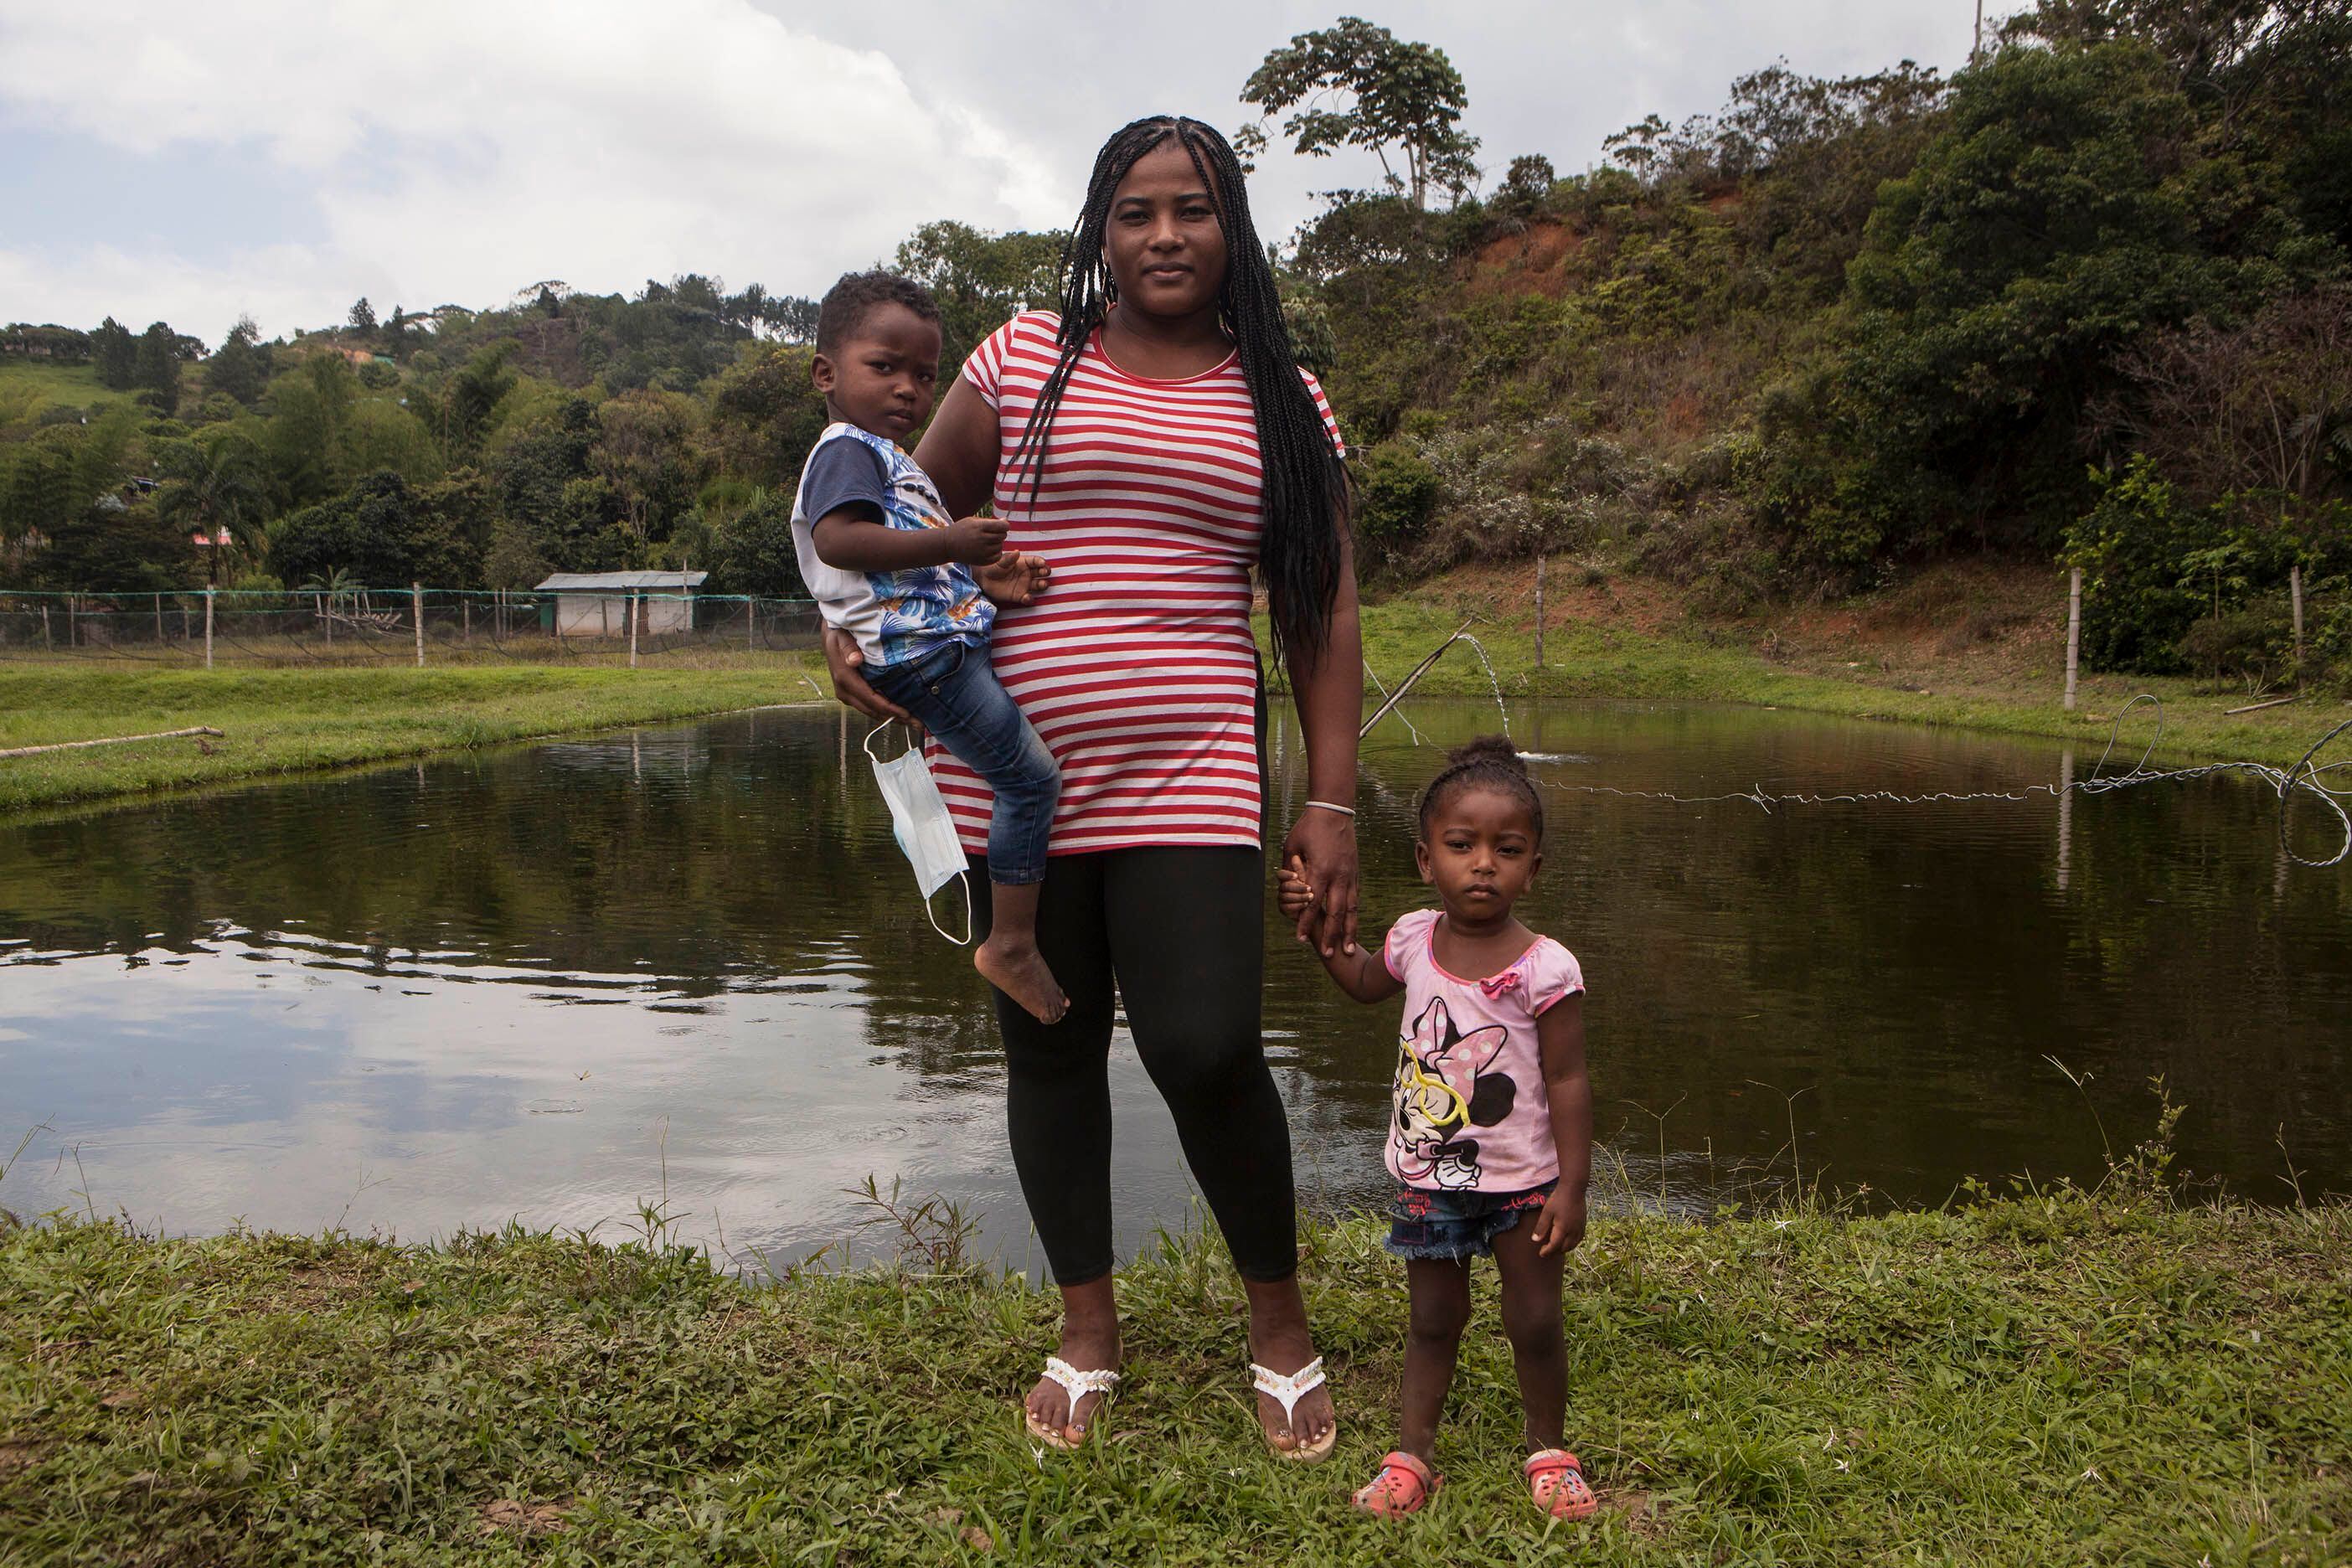 Ingrid Paula Castro, excombatiente de las FARC en proceso de reincorporación, con sus hijos en la finca de la vereda Mandivá, de donde decidieron marcharse por las amenazas recibidas. Pincha en la imagen para ver la fotogalería.